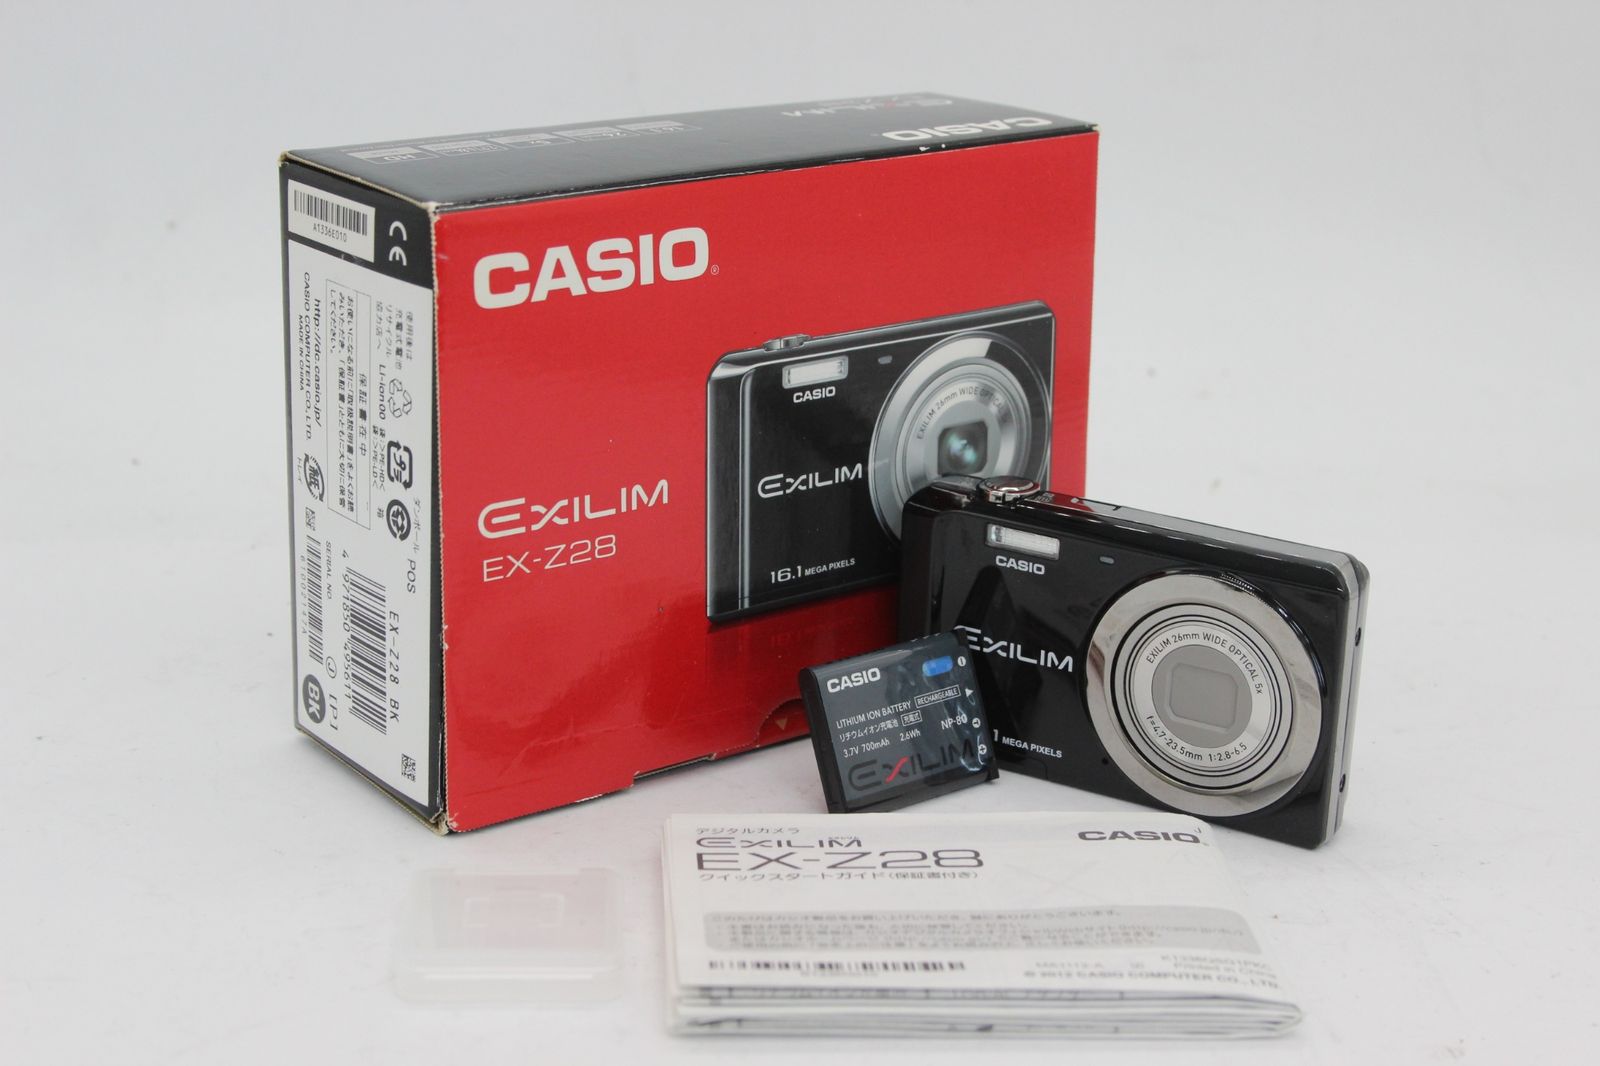 【美品 返品保証】 【元箱付き】カシオ Casio Exilim EX-Z28 ブラック 5x バッテリー付き コンパクトデジタルカメラ v905